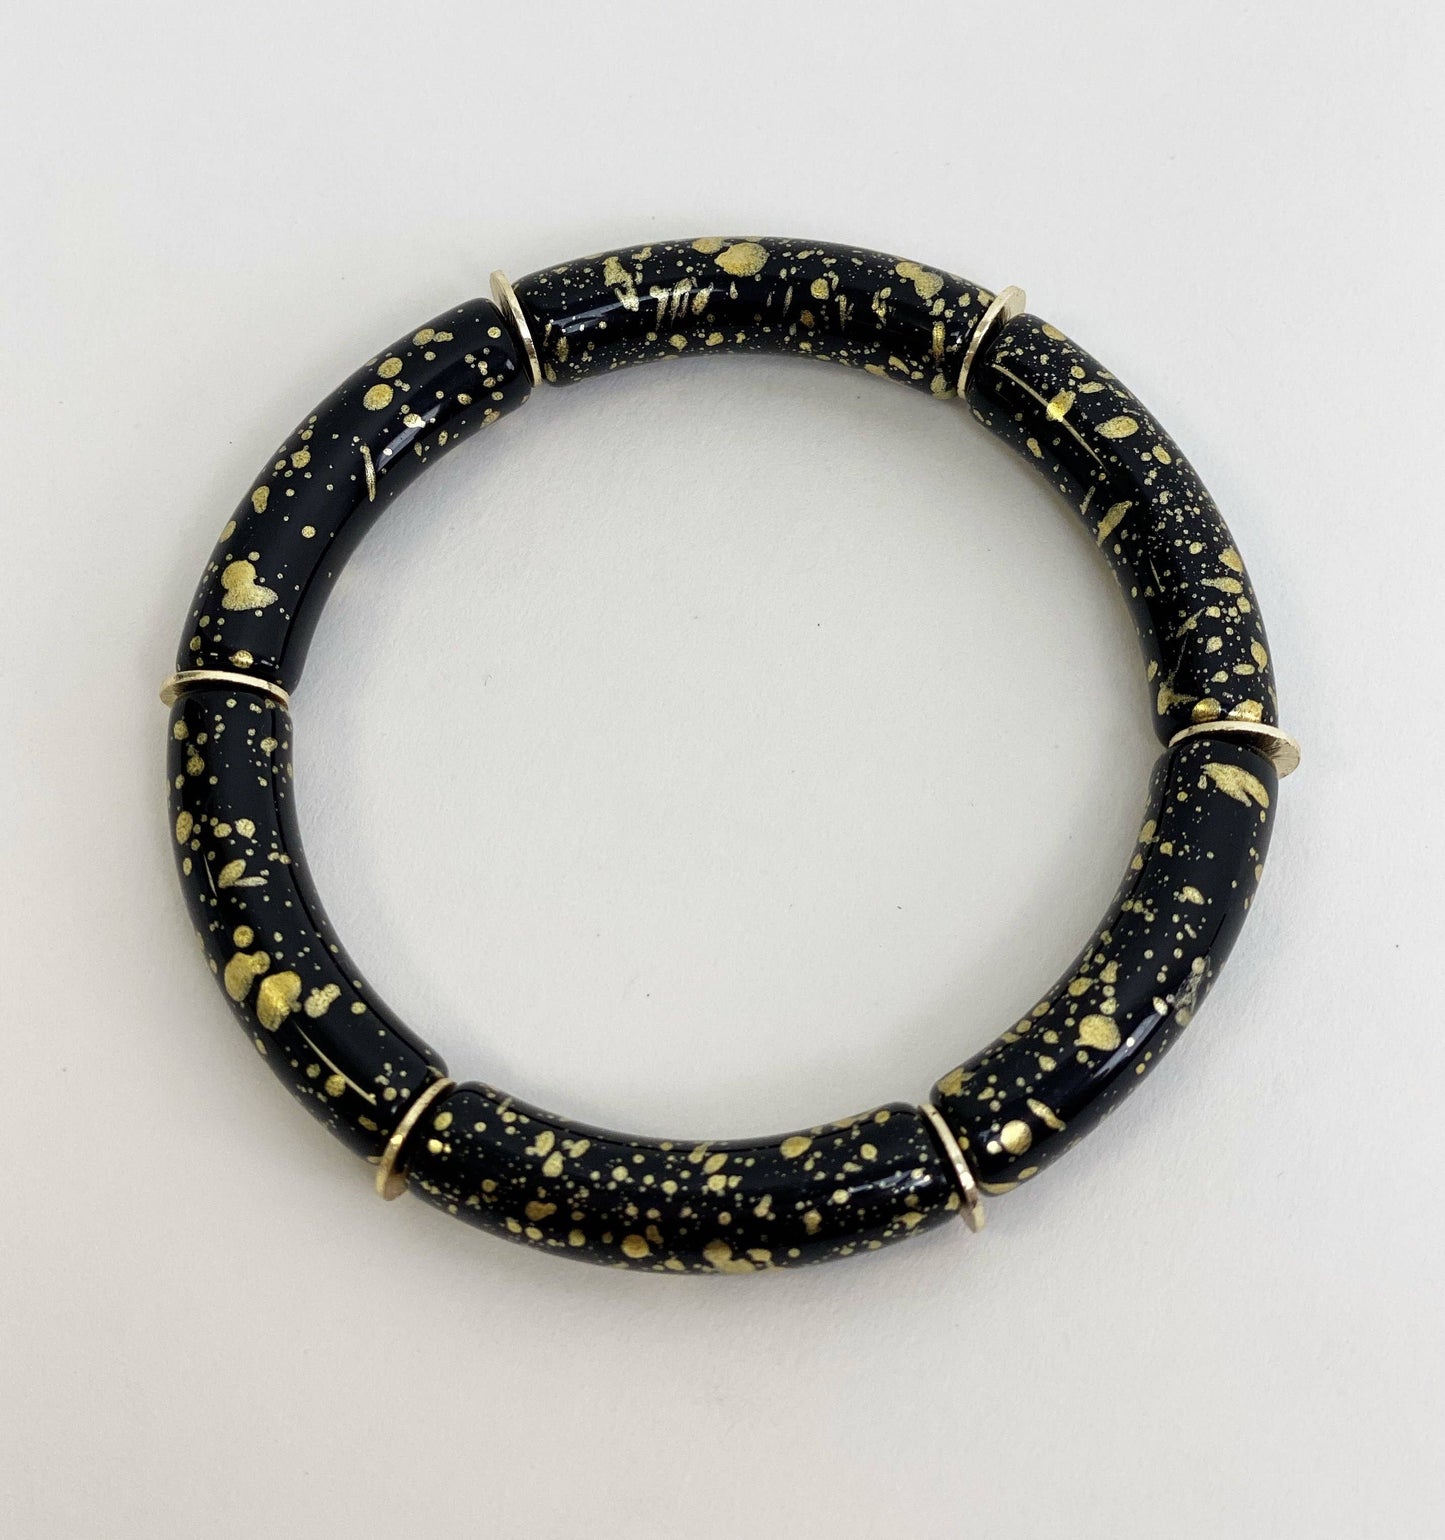 Taylor Shaye Designs Skinny Candy Bracelets: Black/Gold Splatter